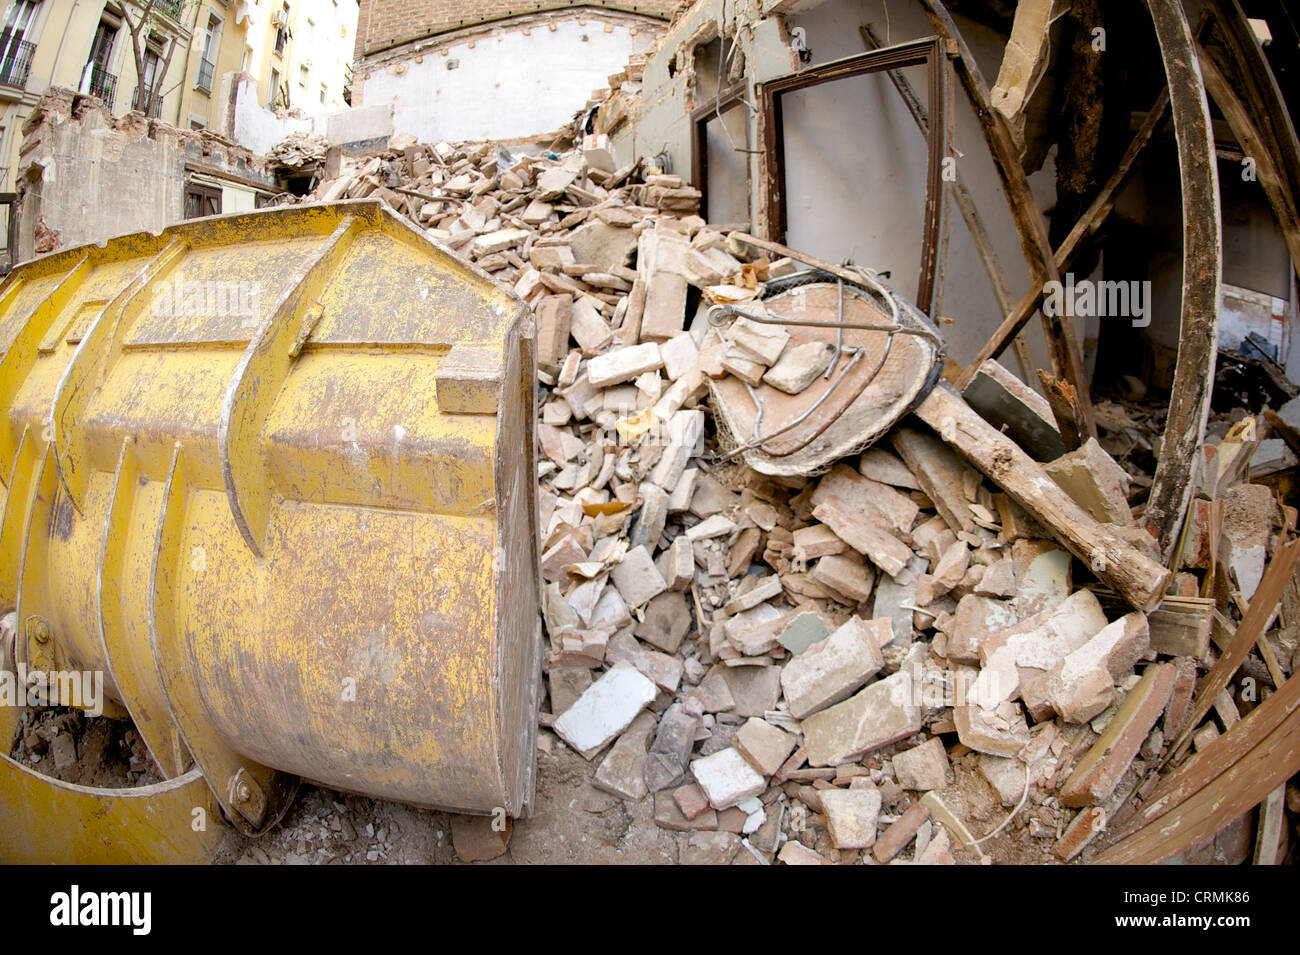 Vista laterale del giallo digger la demolizione di un edificio e deselezionando le macerie, illustrante il settore delle costruzioni in rovina, Spagna Foto Stock